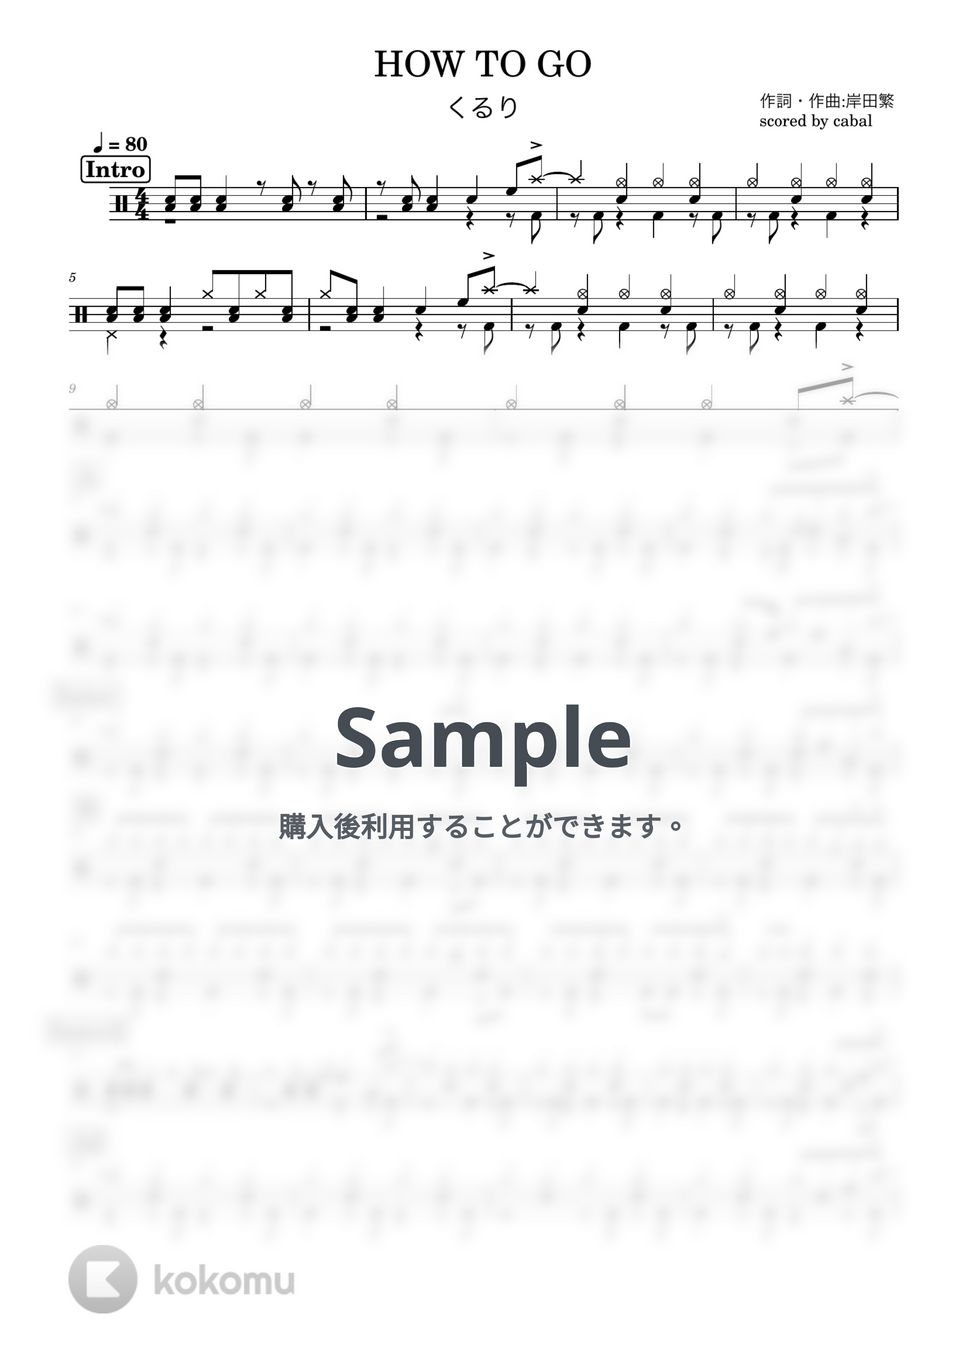 くるり - HOW TO GO (ドラム譜面) by cabal